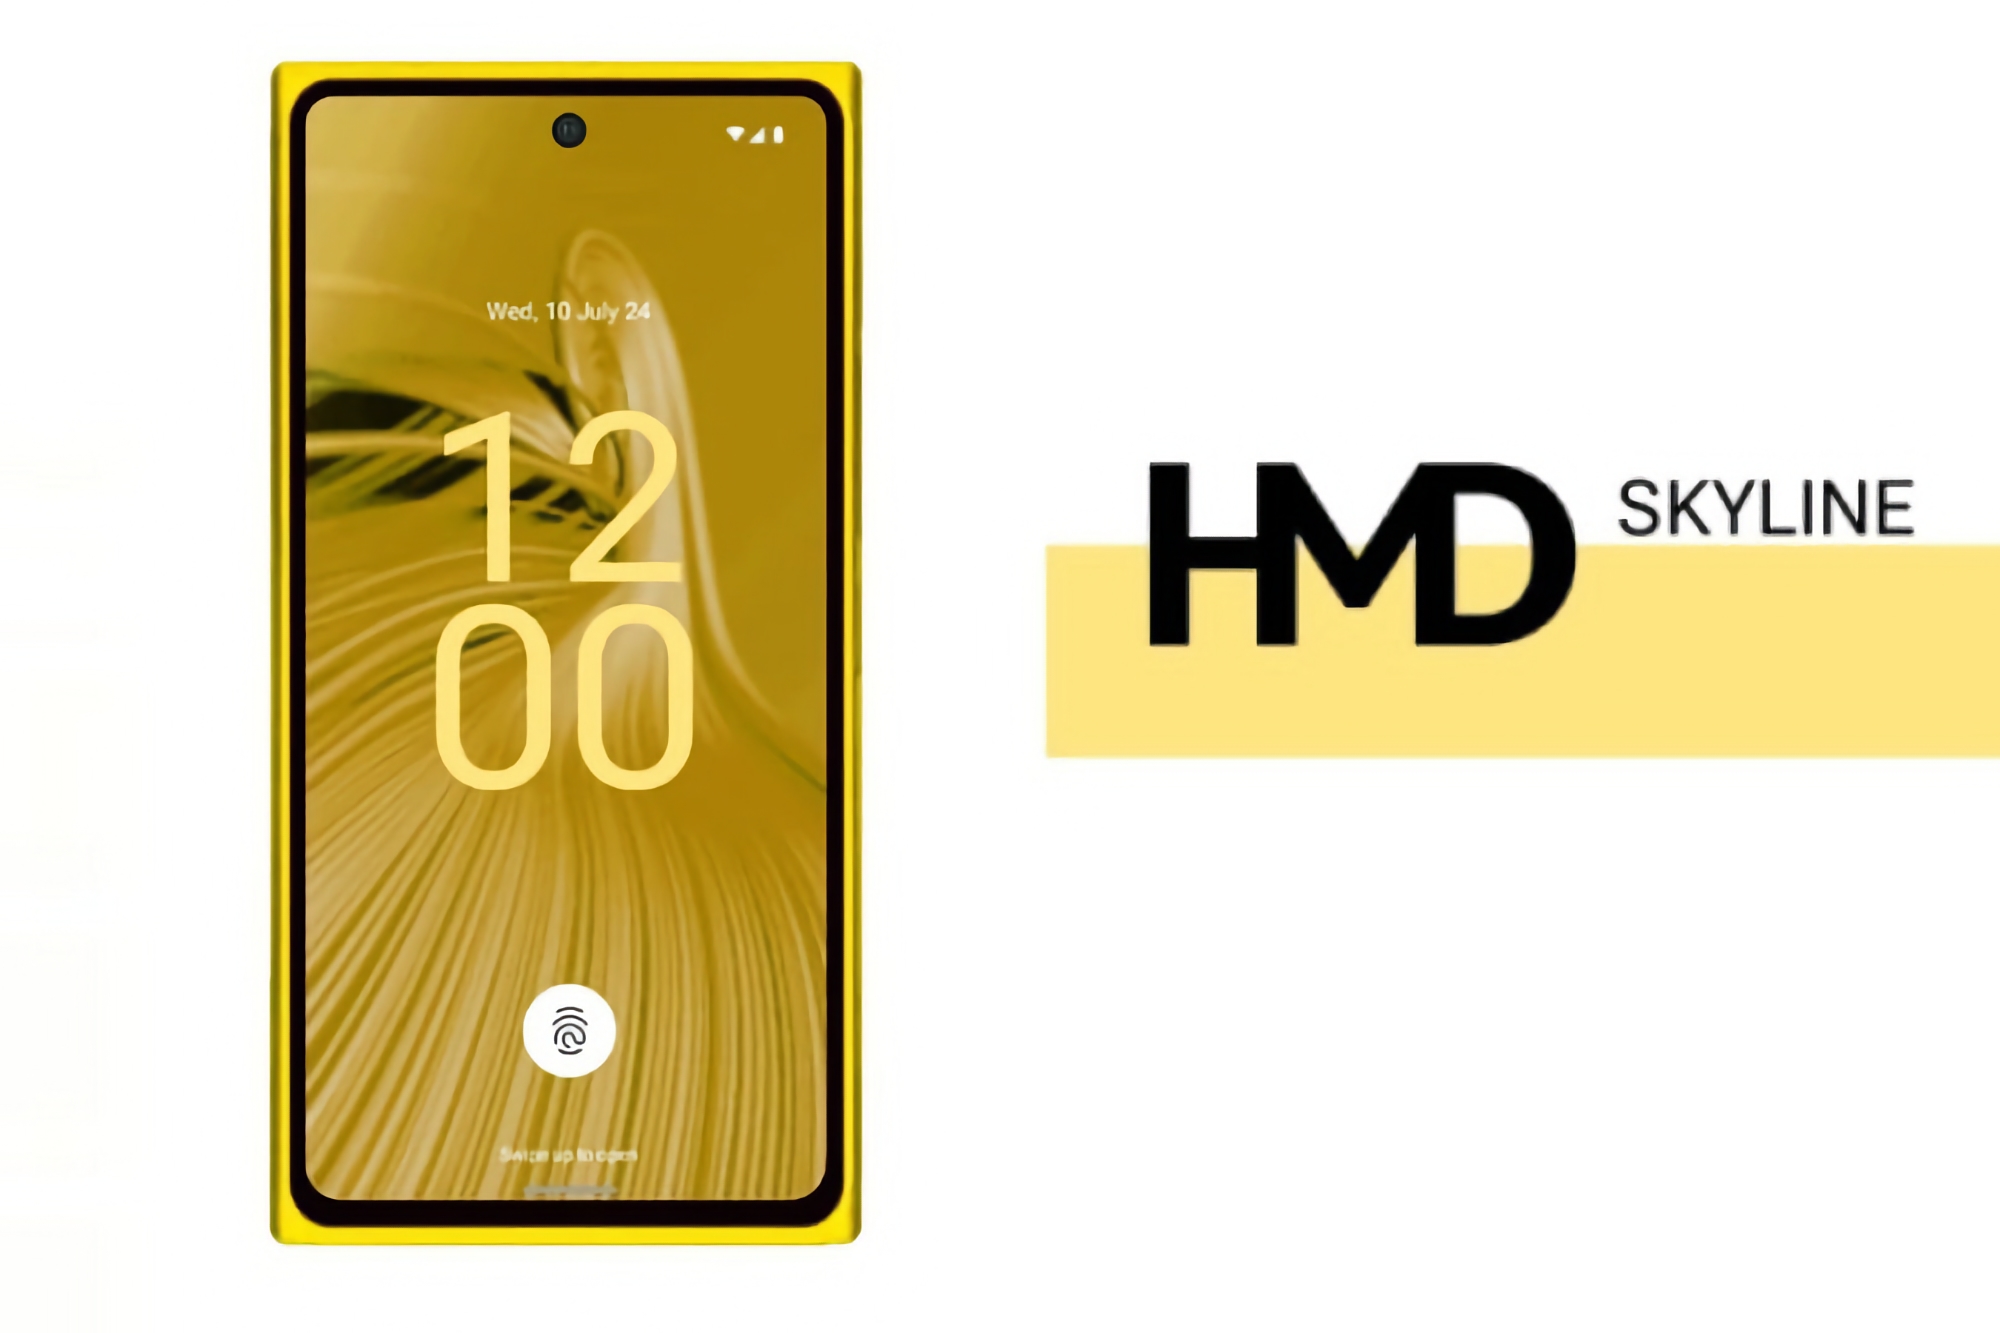 Ein Smartphone im Design des Nokia Lumia 920: So viel wird das HMD Skyline kosten